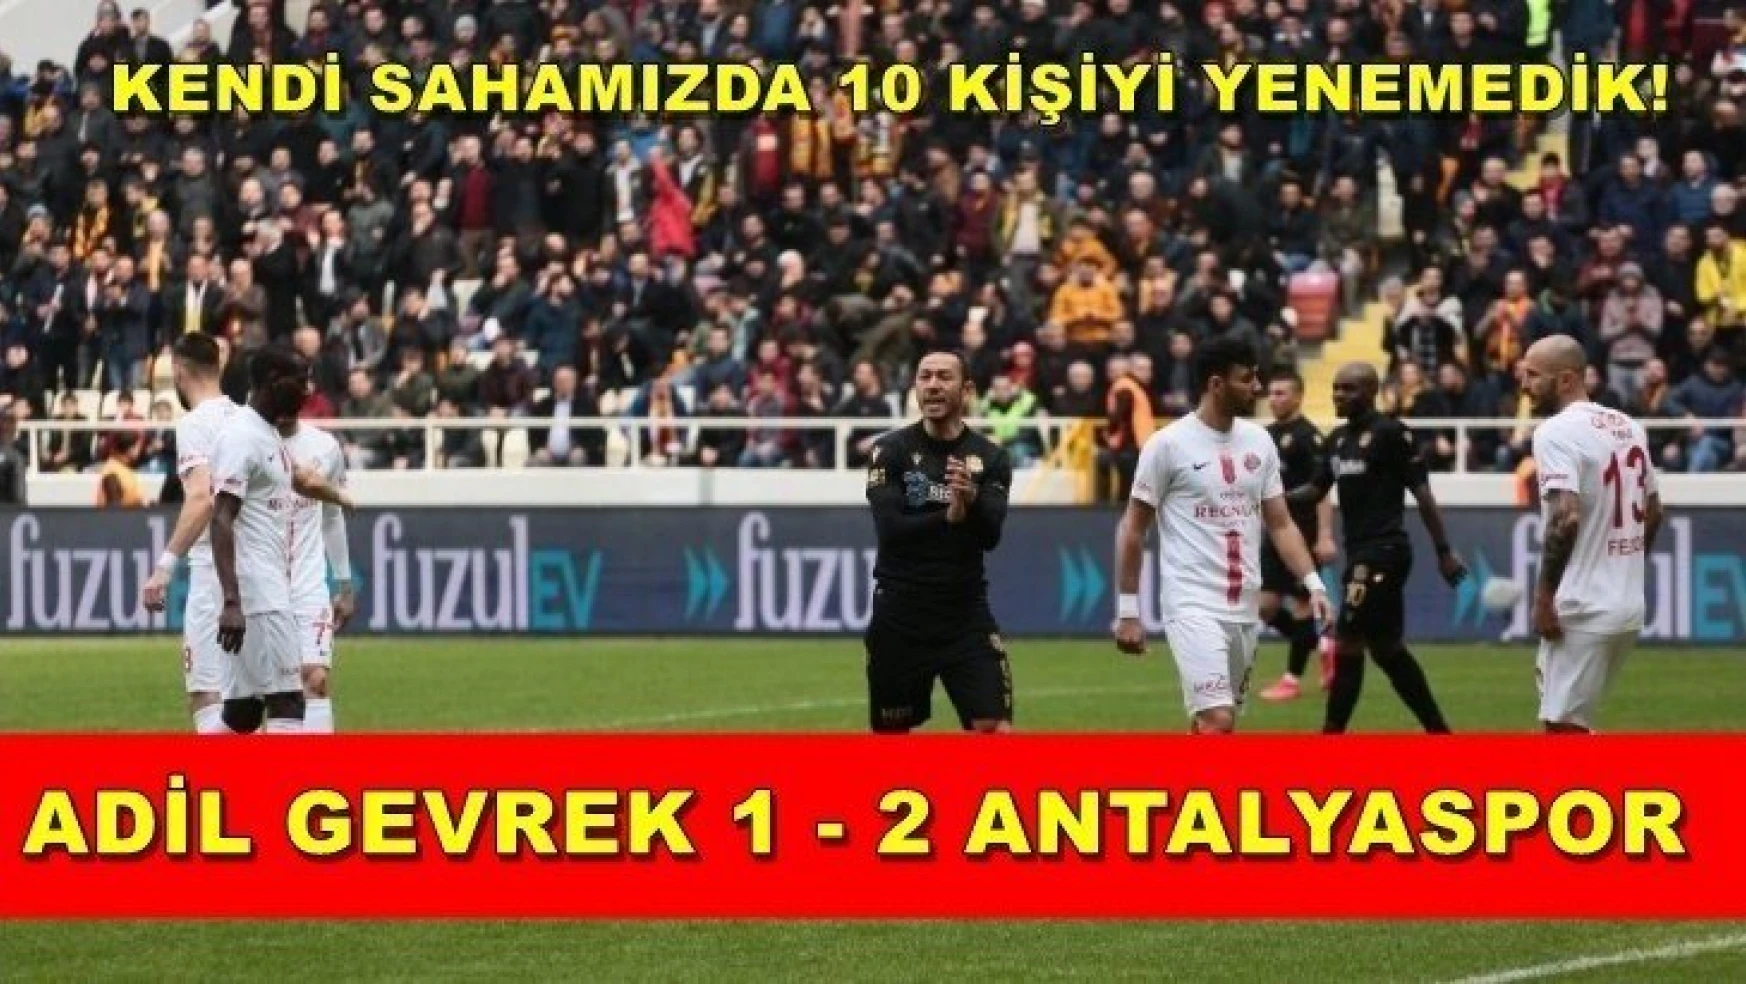 Adil Gevrek 1-2 Antalyaspor